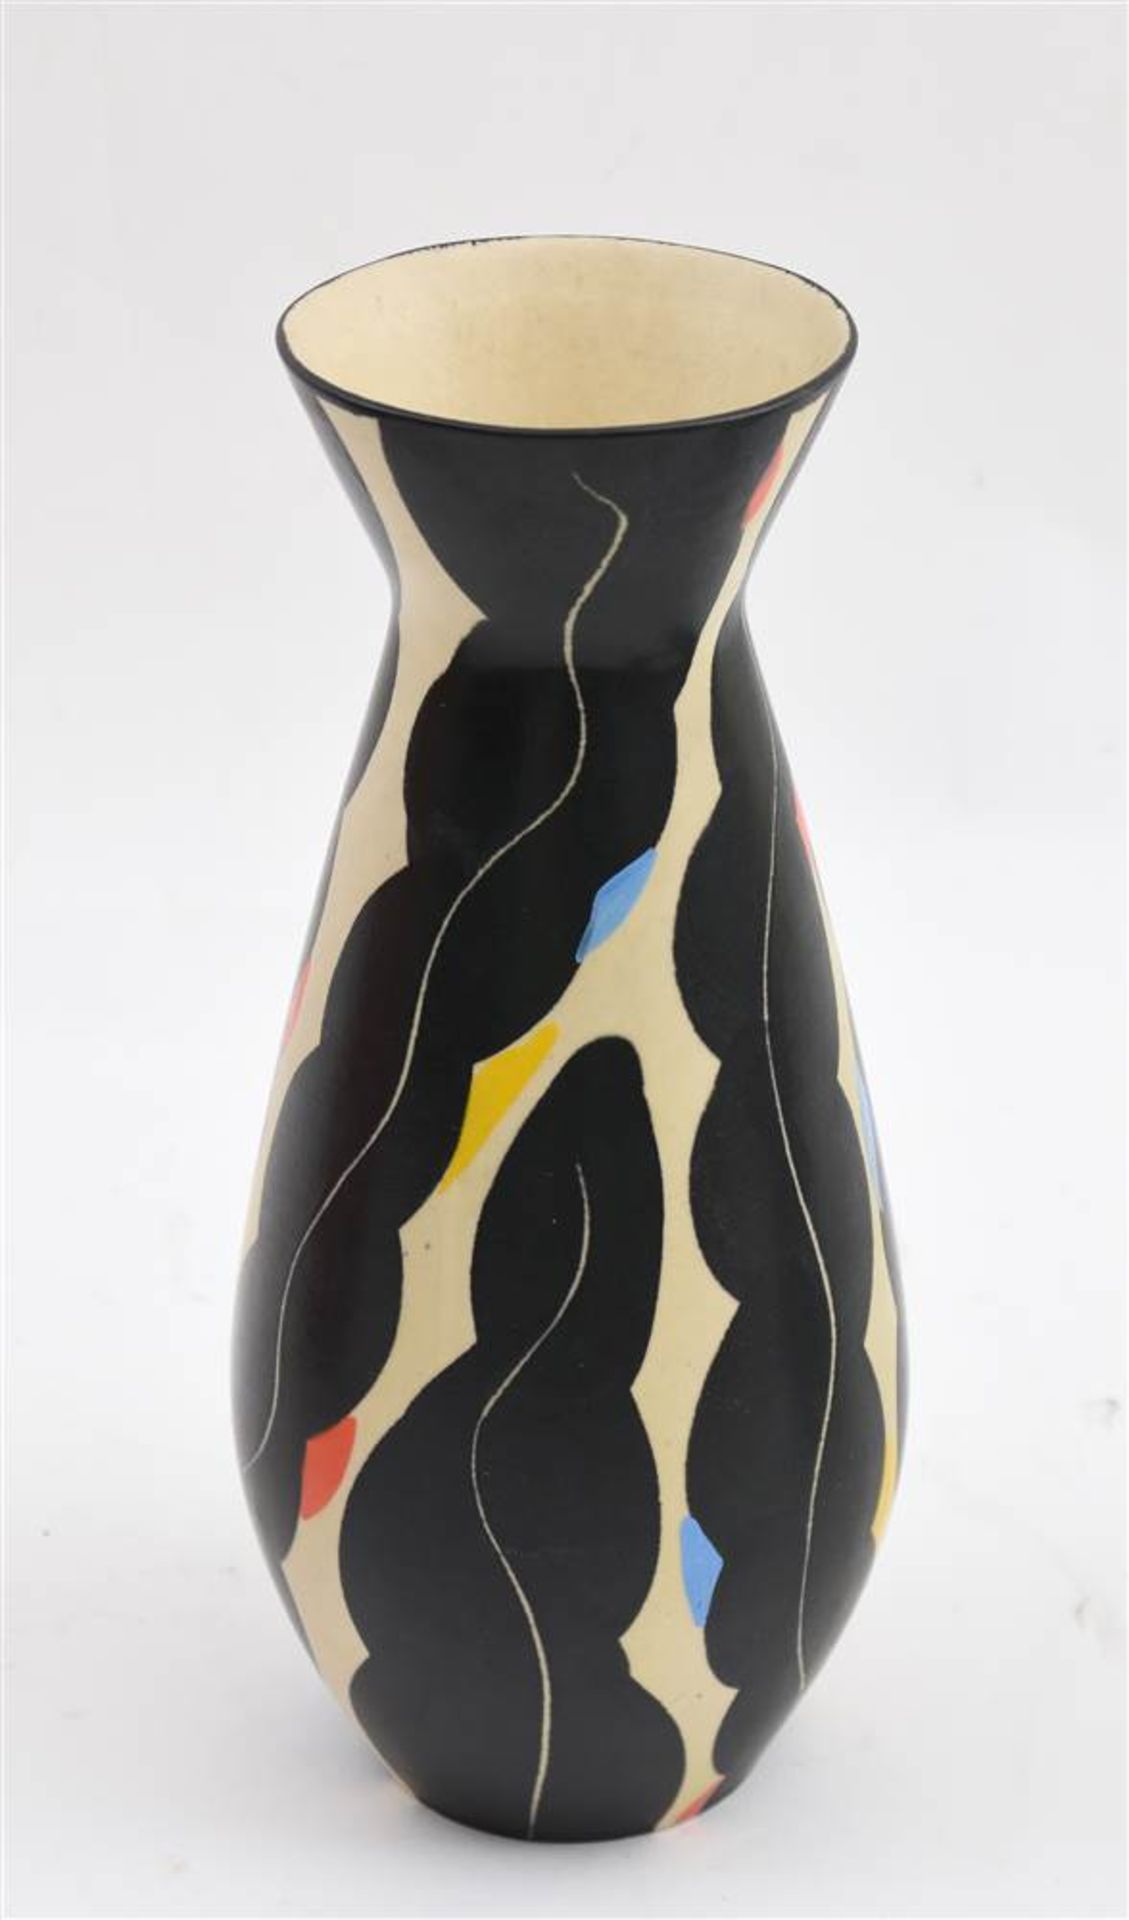 KERAMIK- VASE, bunte glasierte Keramik, nummeriert, 20. Jahrhundert Vase aus bemalter glasierter